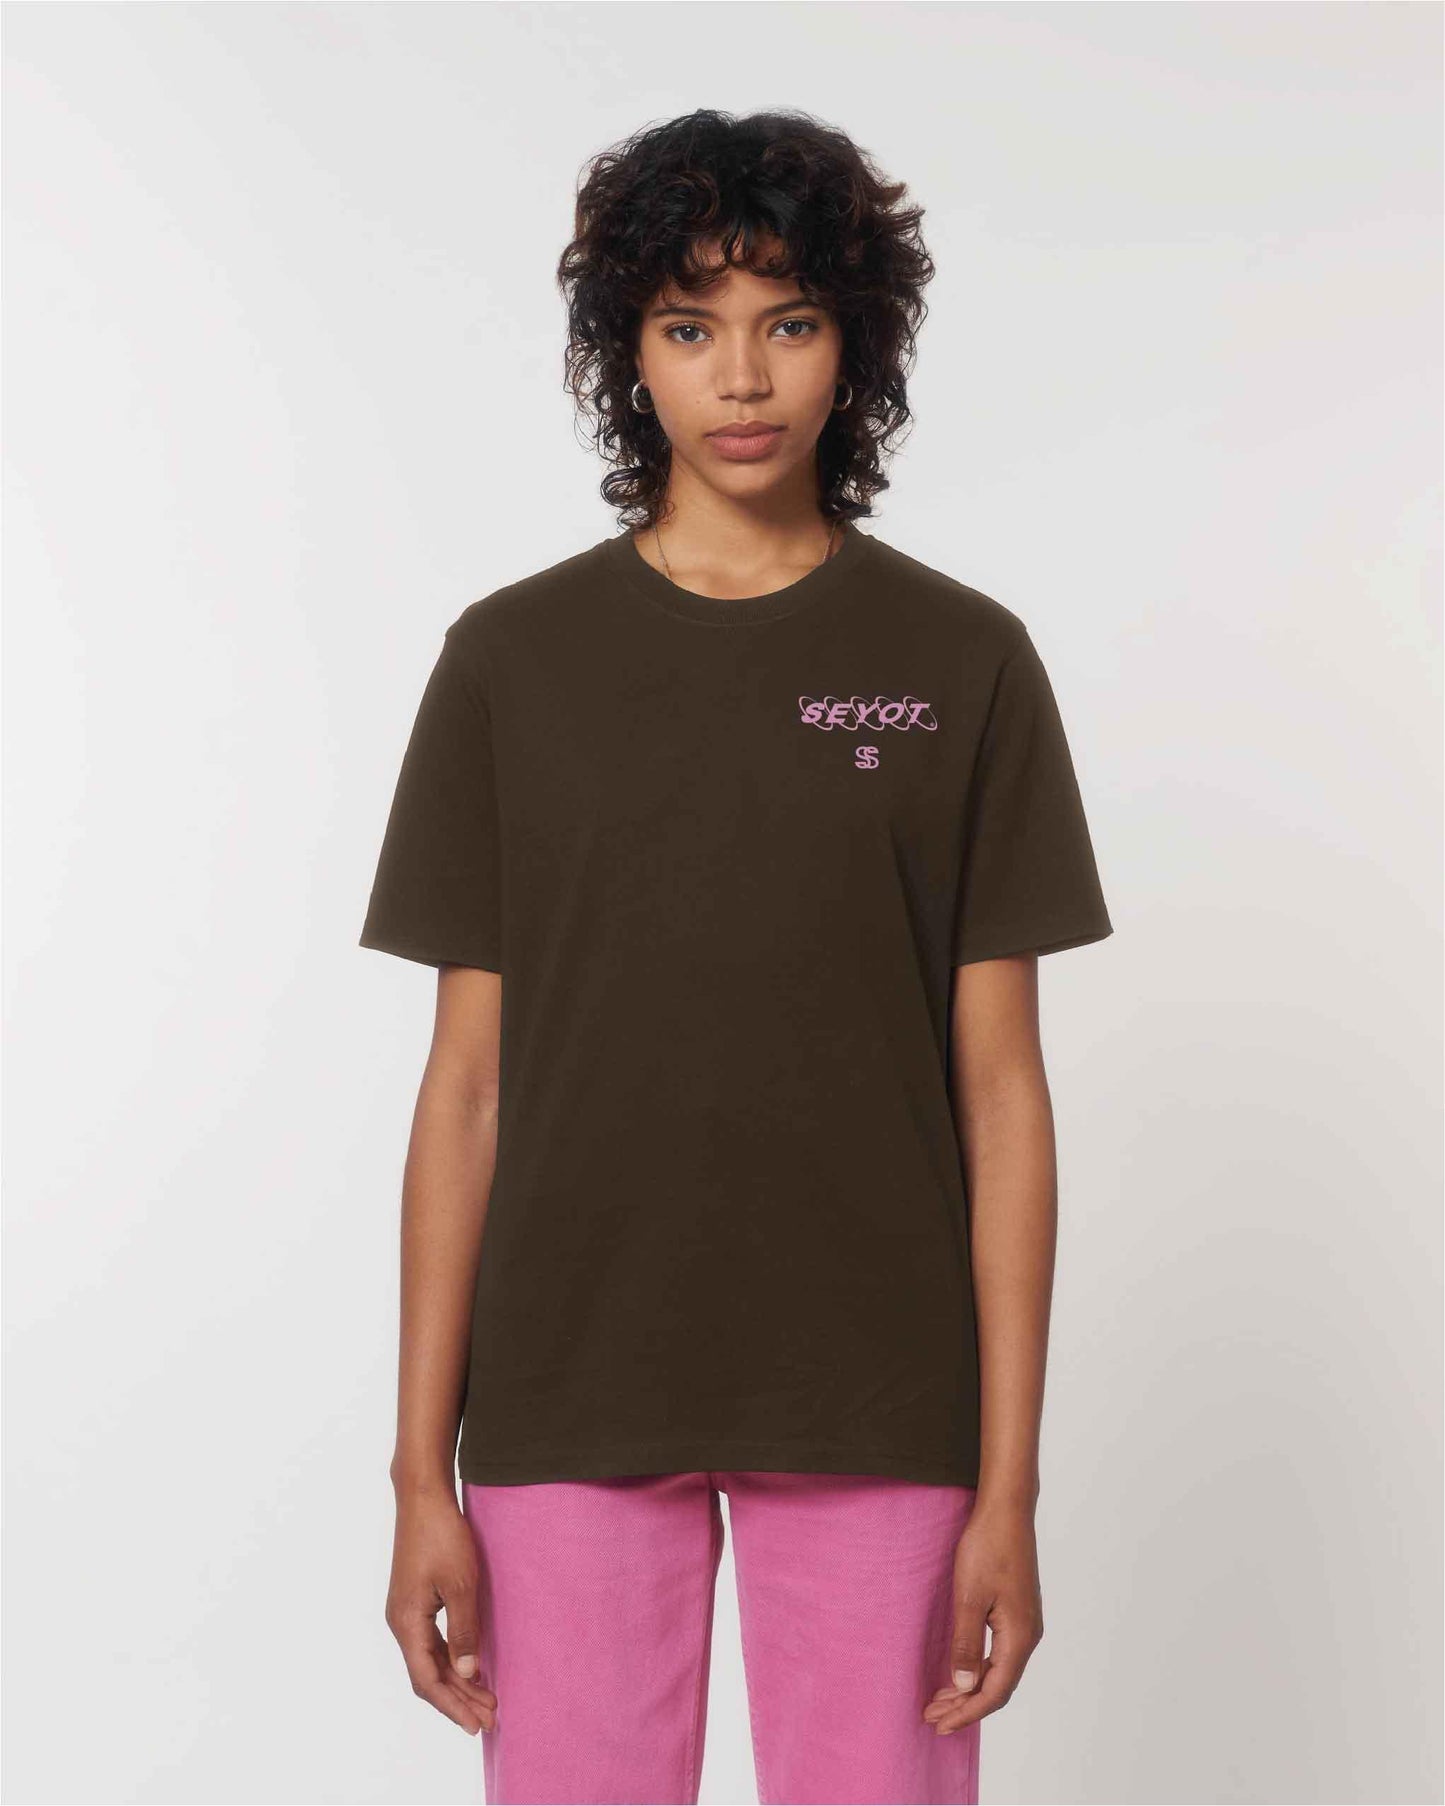 t-shirt marron avec imprimé rose Seyot première collection